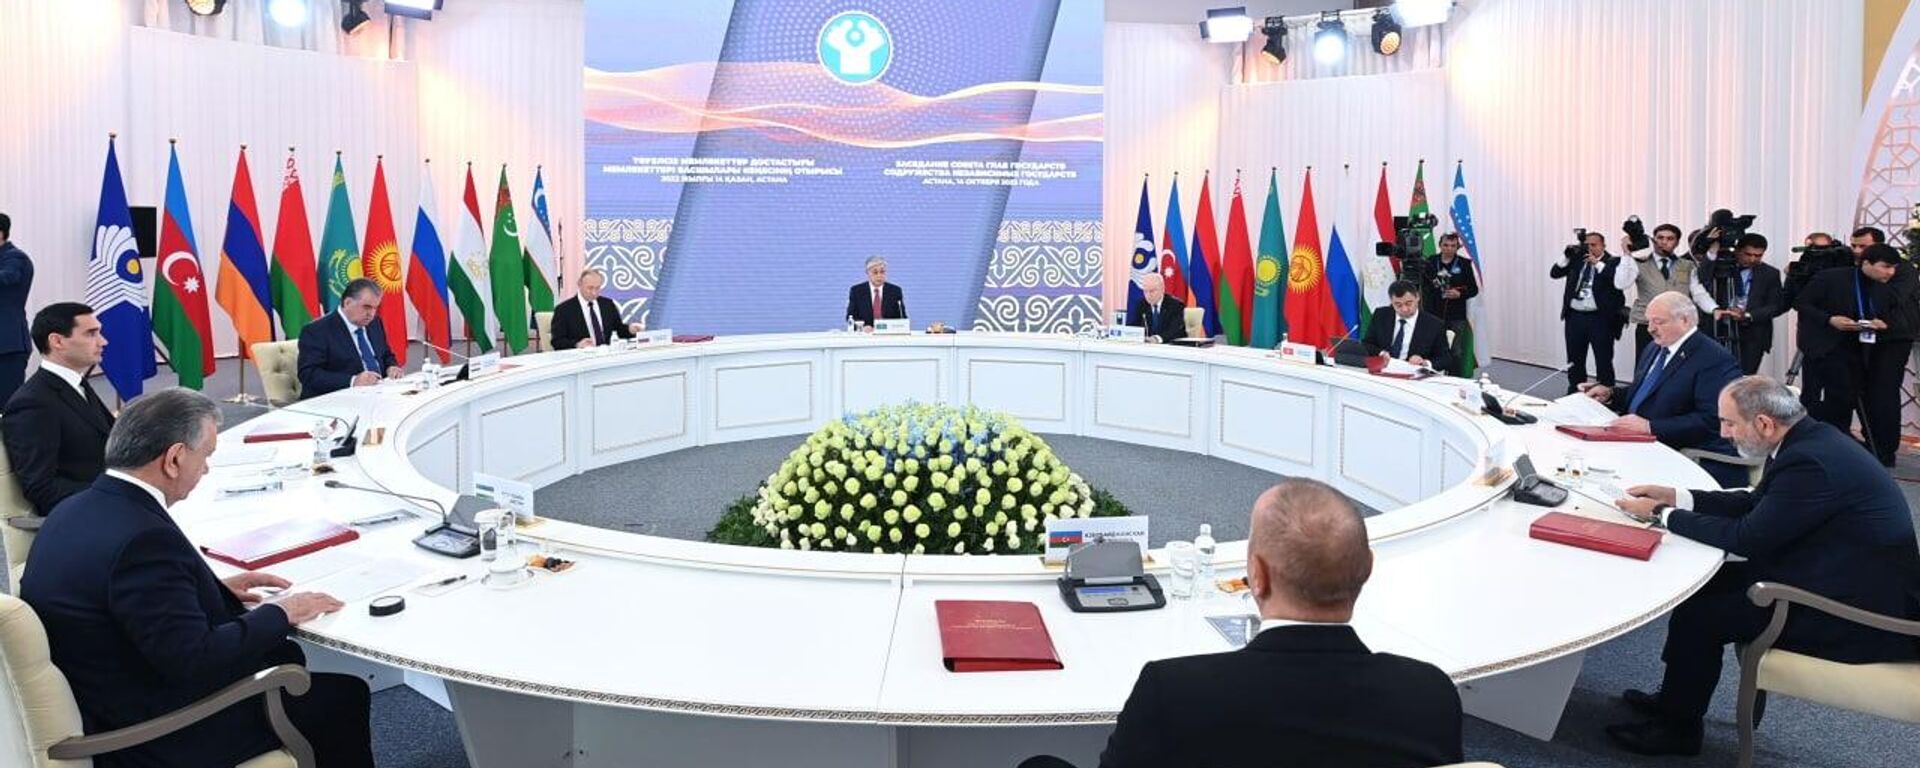 Президенты на саммите глав государств СНГ в Астане, 14 октября 2022 года - Sputnik Казахстан, 1920, 14.10.2022